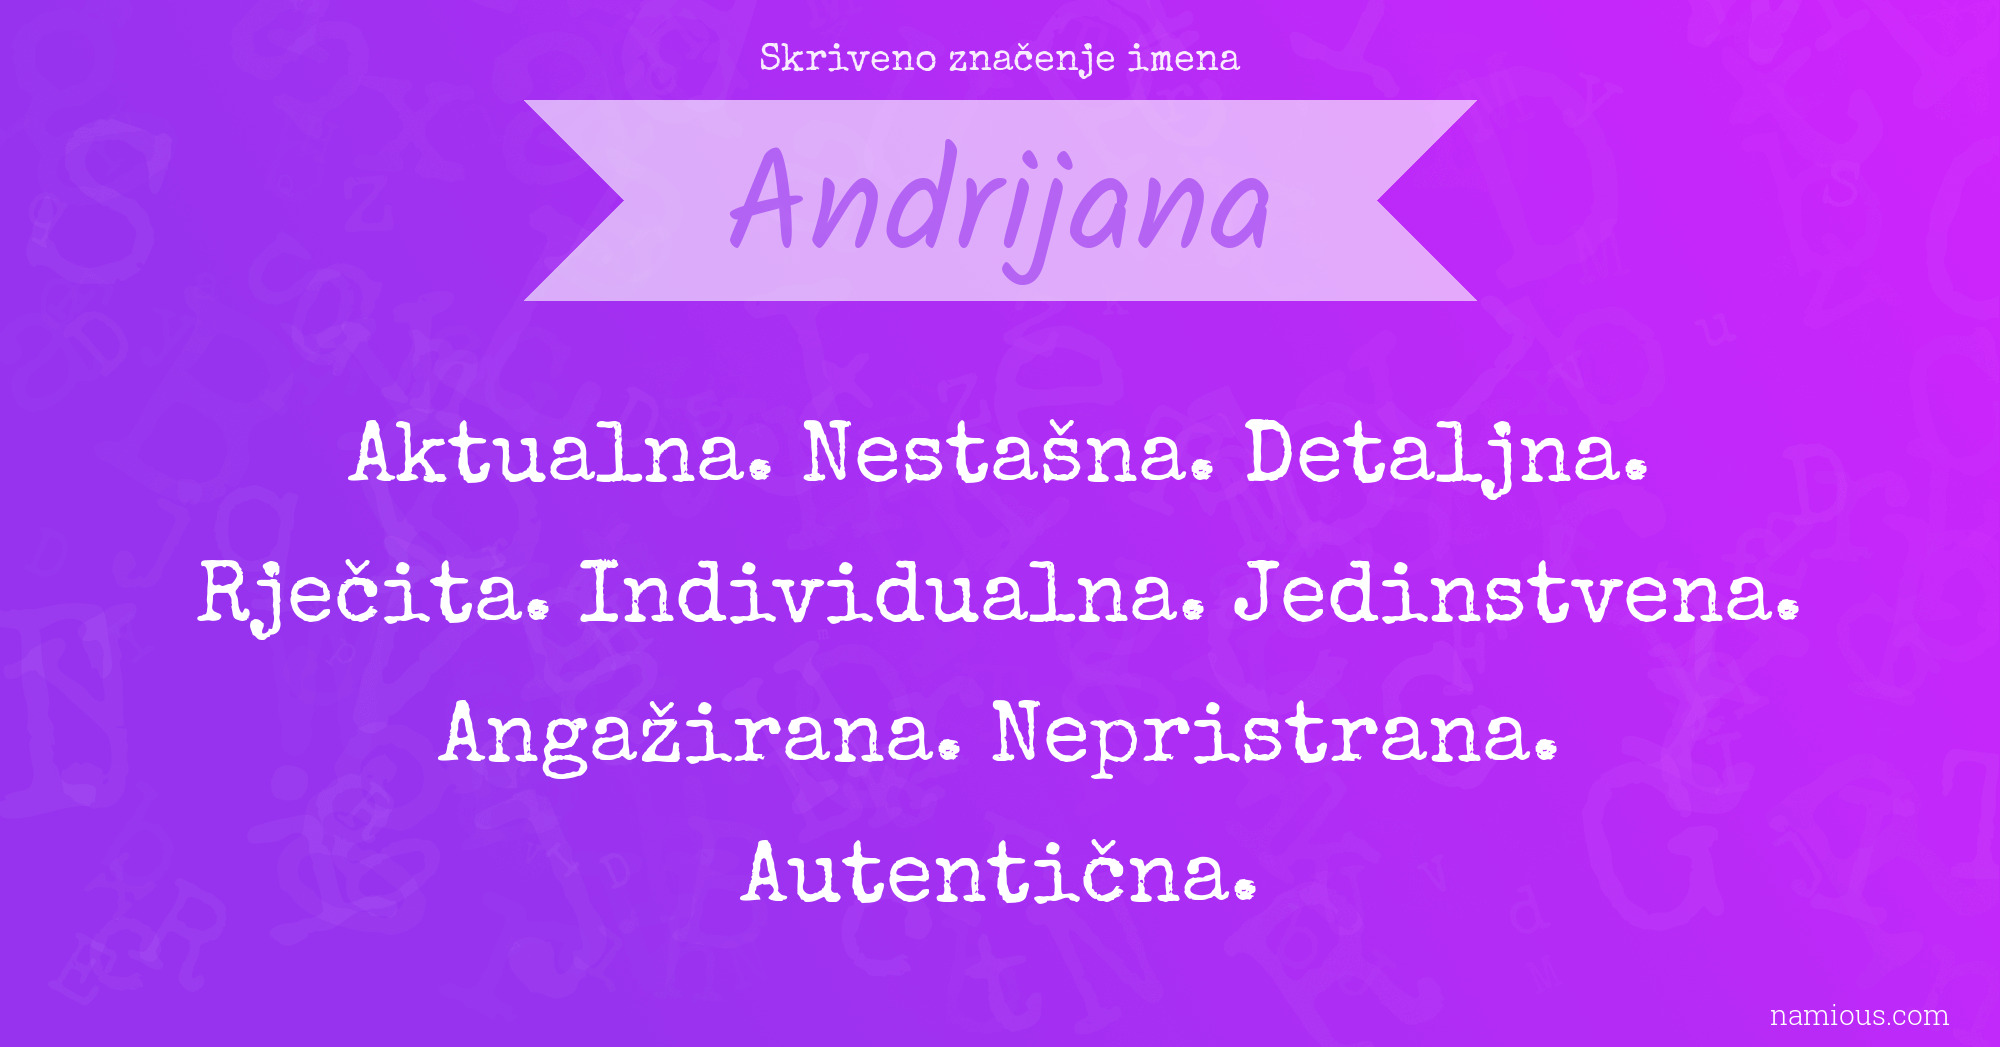 Skriveno značenje imena Andrijana